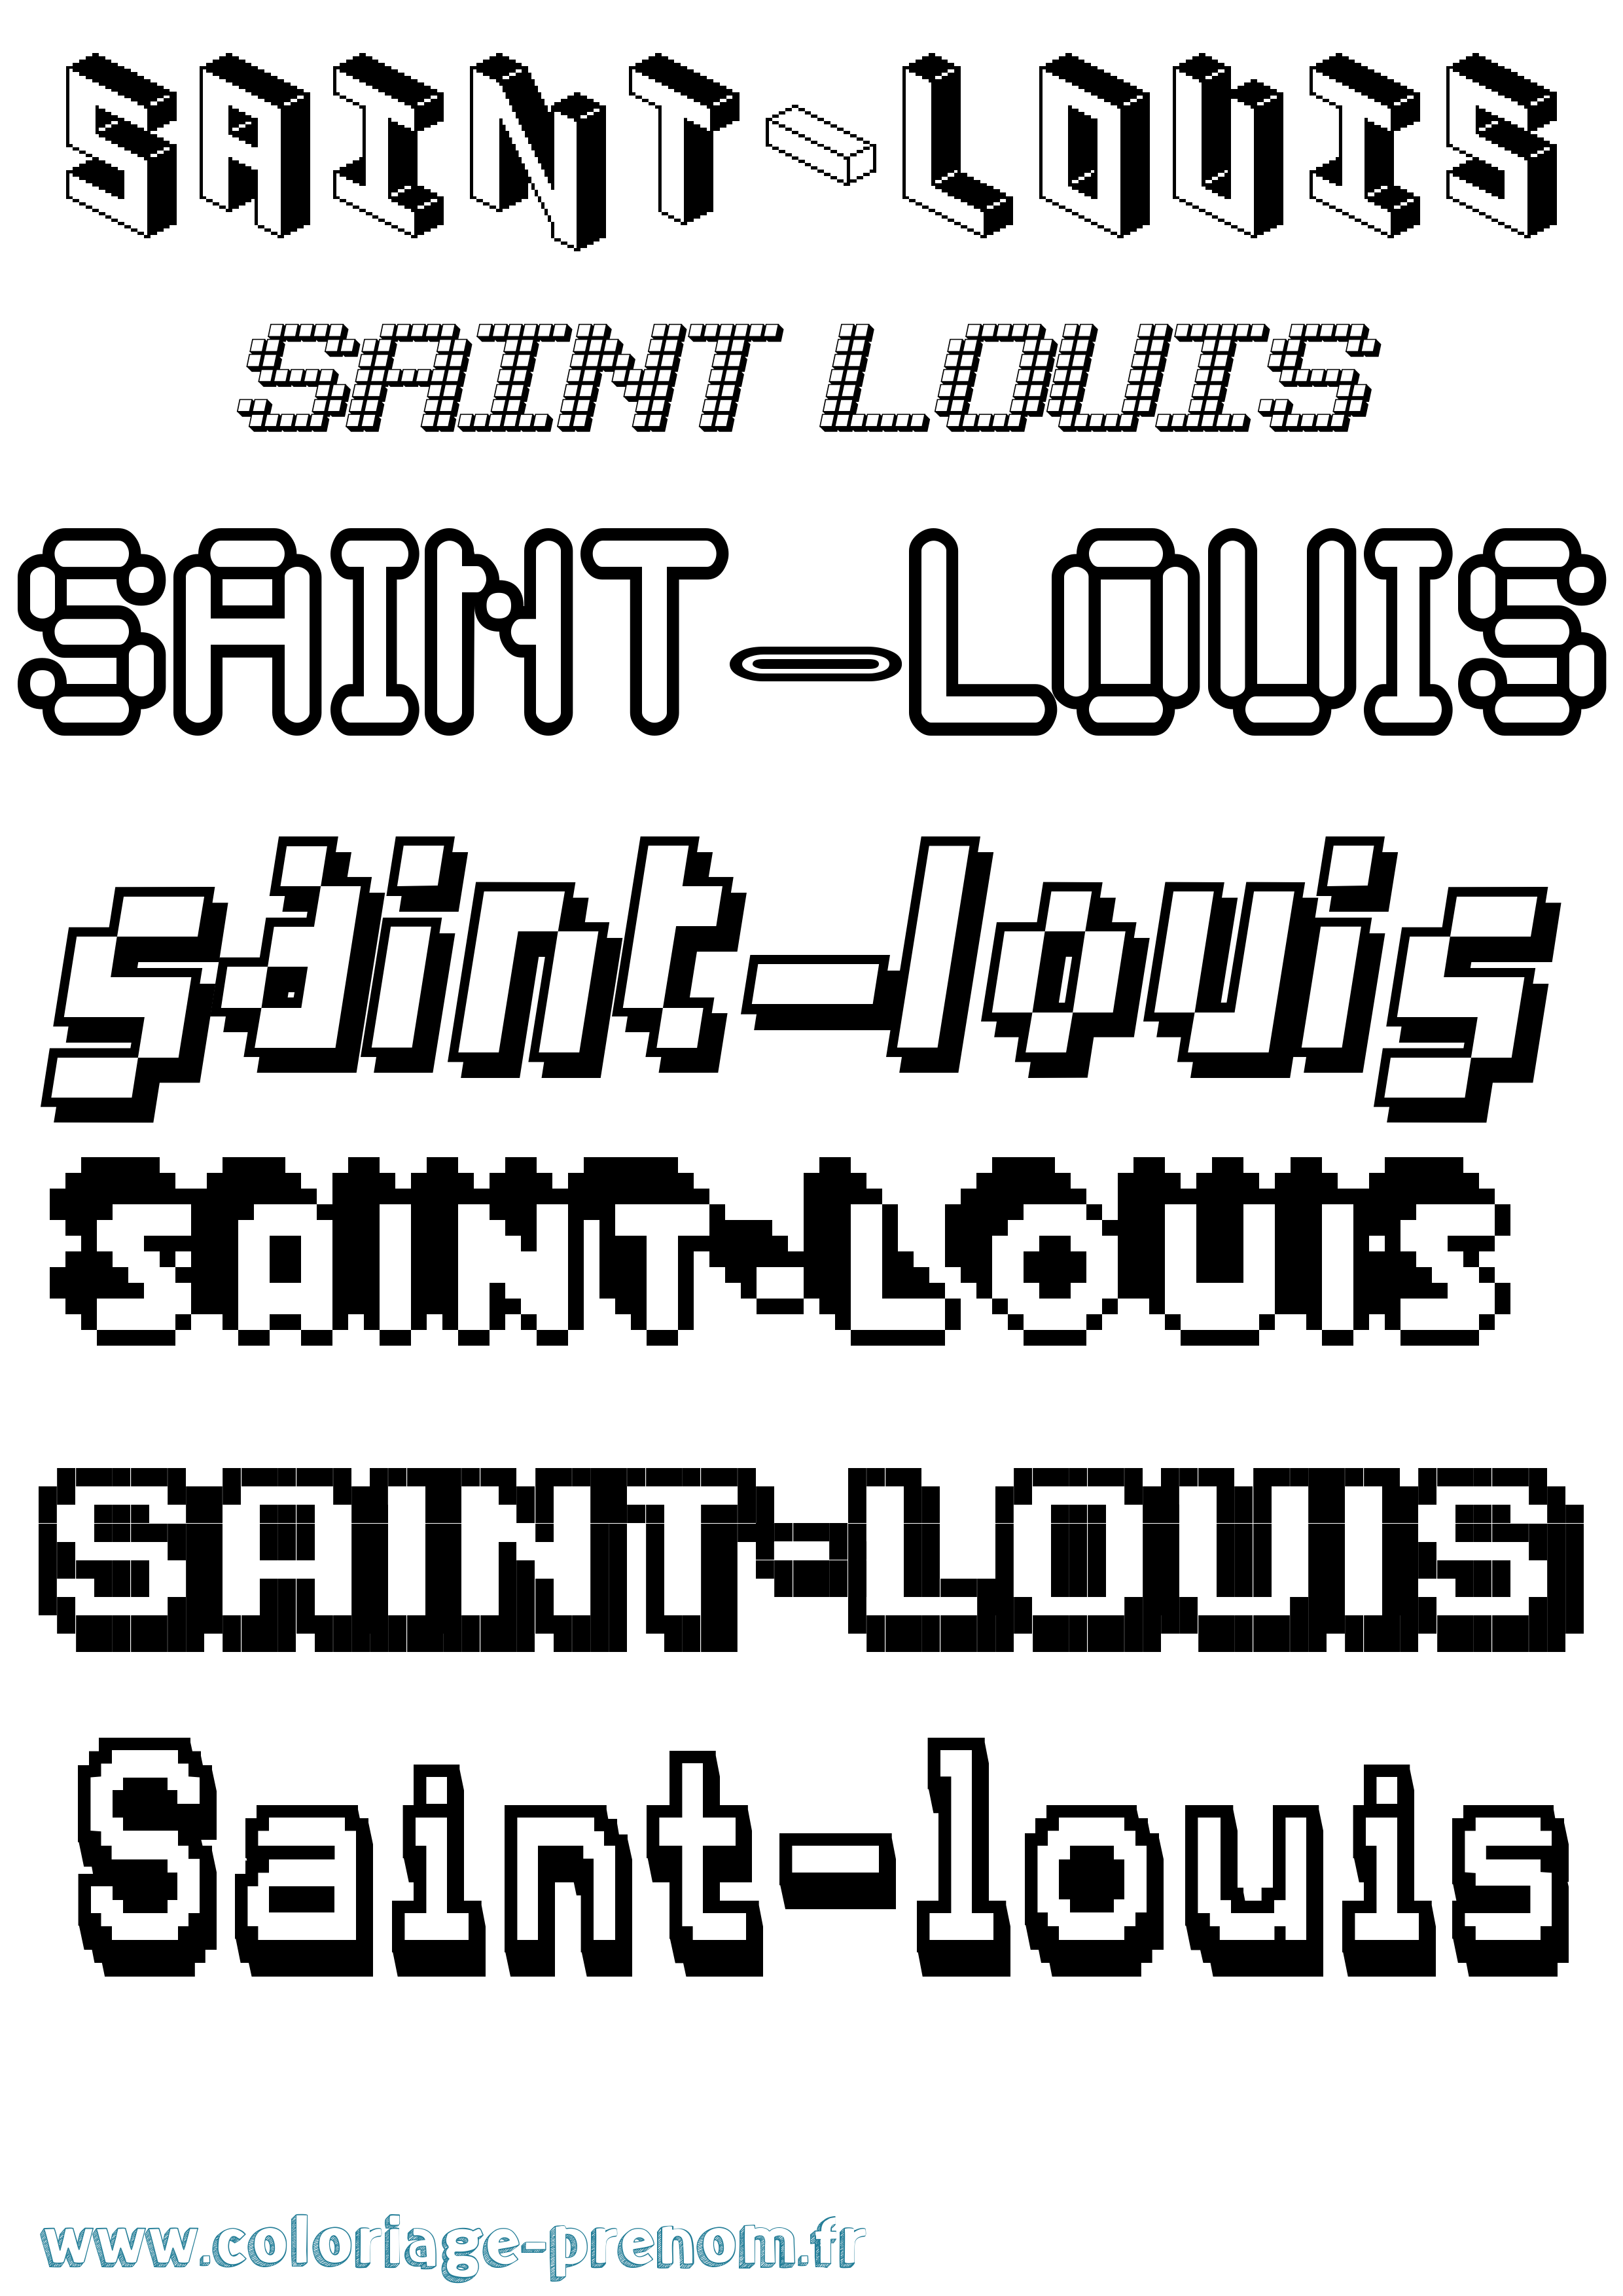 Coloriage prénom Saint-Louis Pixel